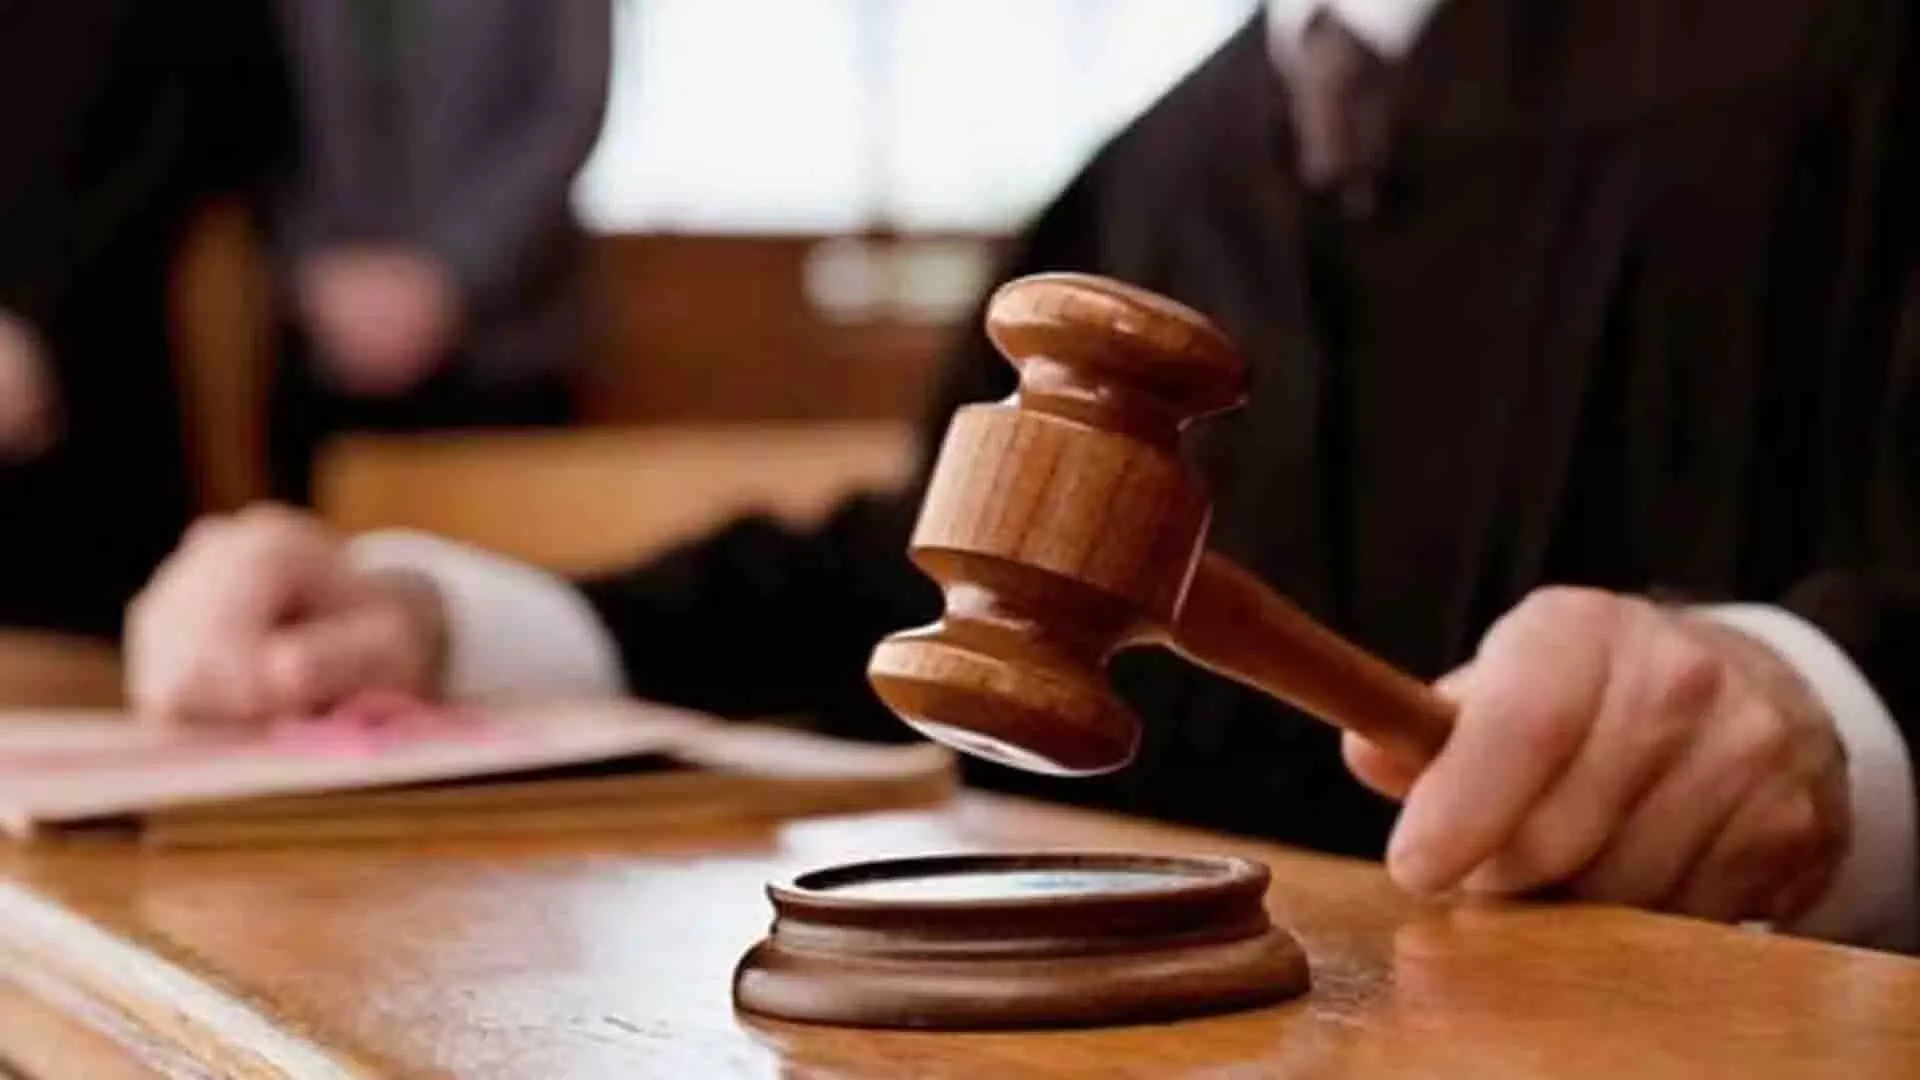 बैंक डकैती का प्रयास, पश्चिम बंगाल के व्यक्ति को 7 साल की सजा